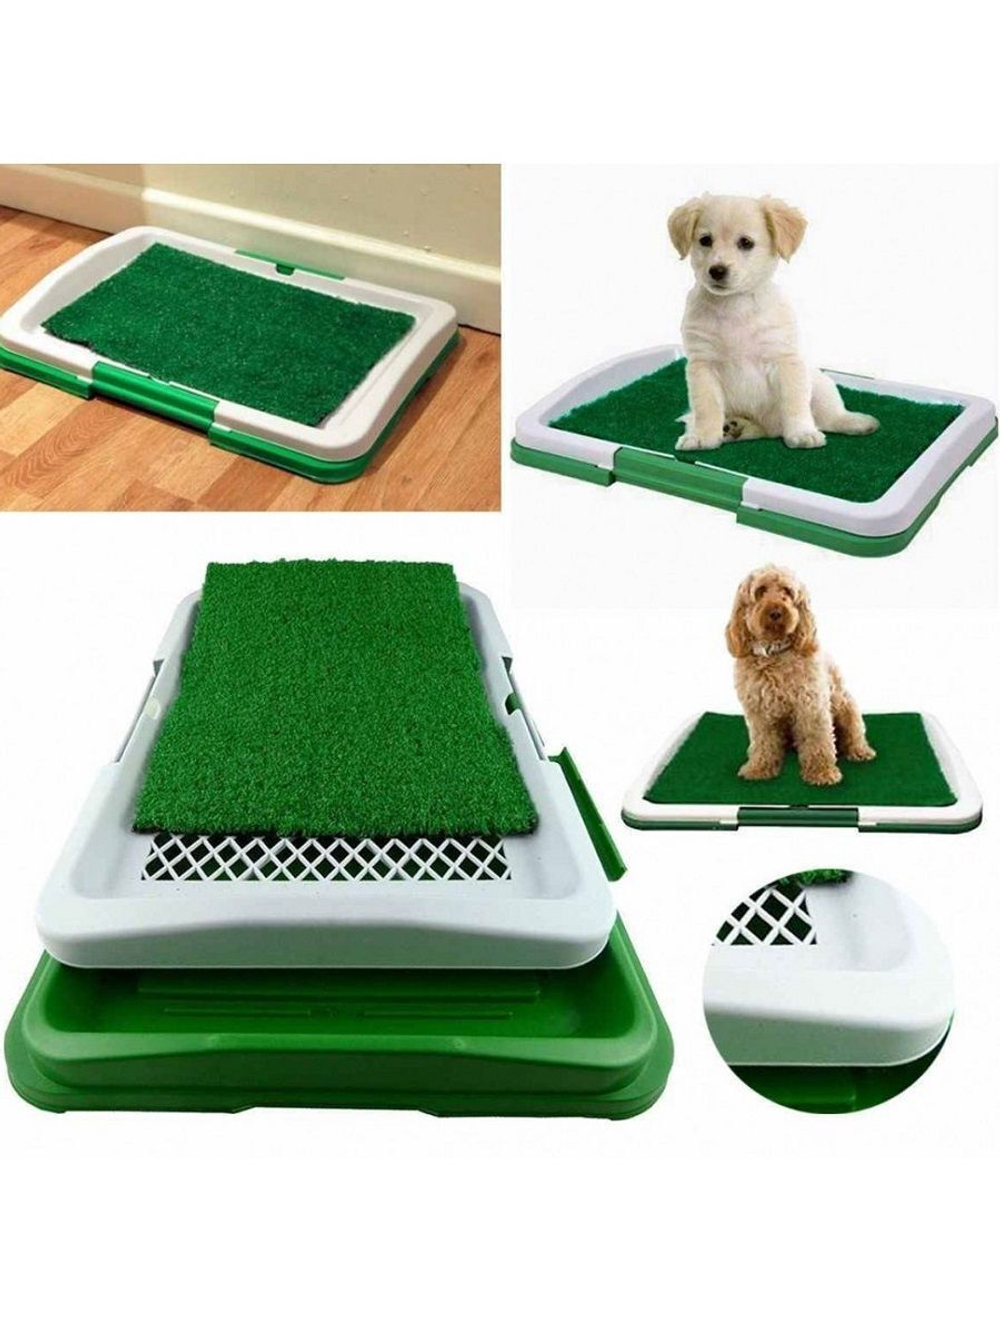 Туалет лоток для собак и кошек Puppy Potty Pad с ковриком зелёная травка, размер 47х36х6 см